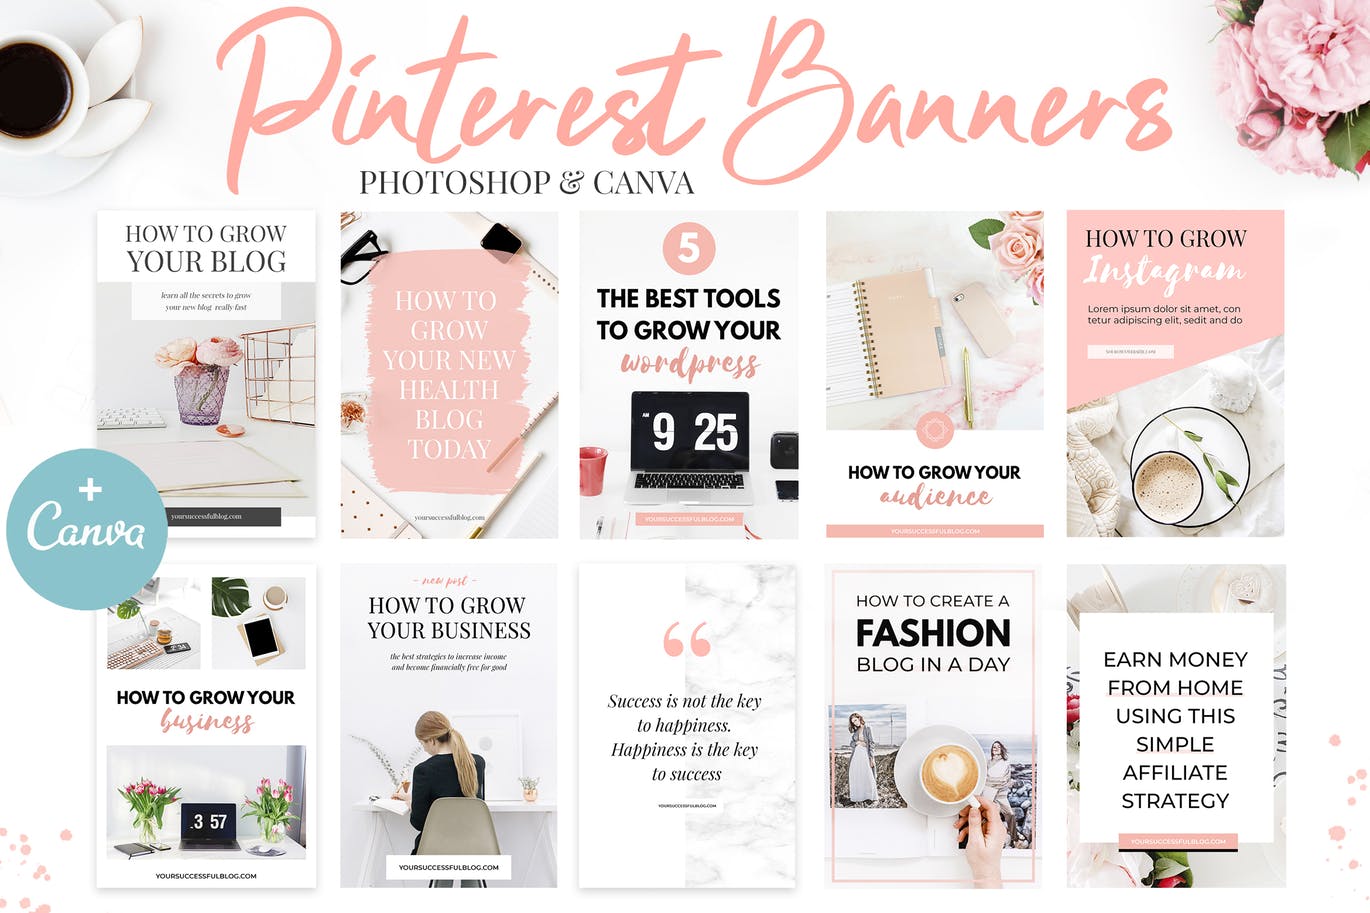 10款粉色主题Pinterest社交贴图广告设计模板第一素材精选v2 Canva Pinterest Templates V.2插图